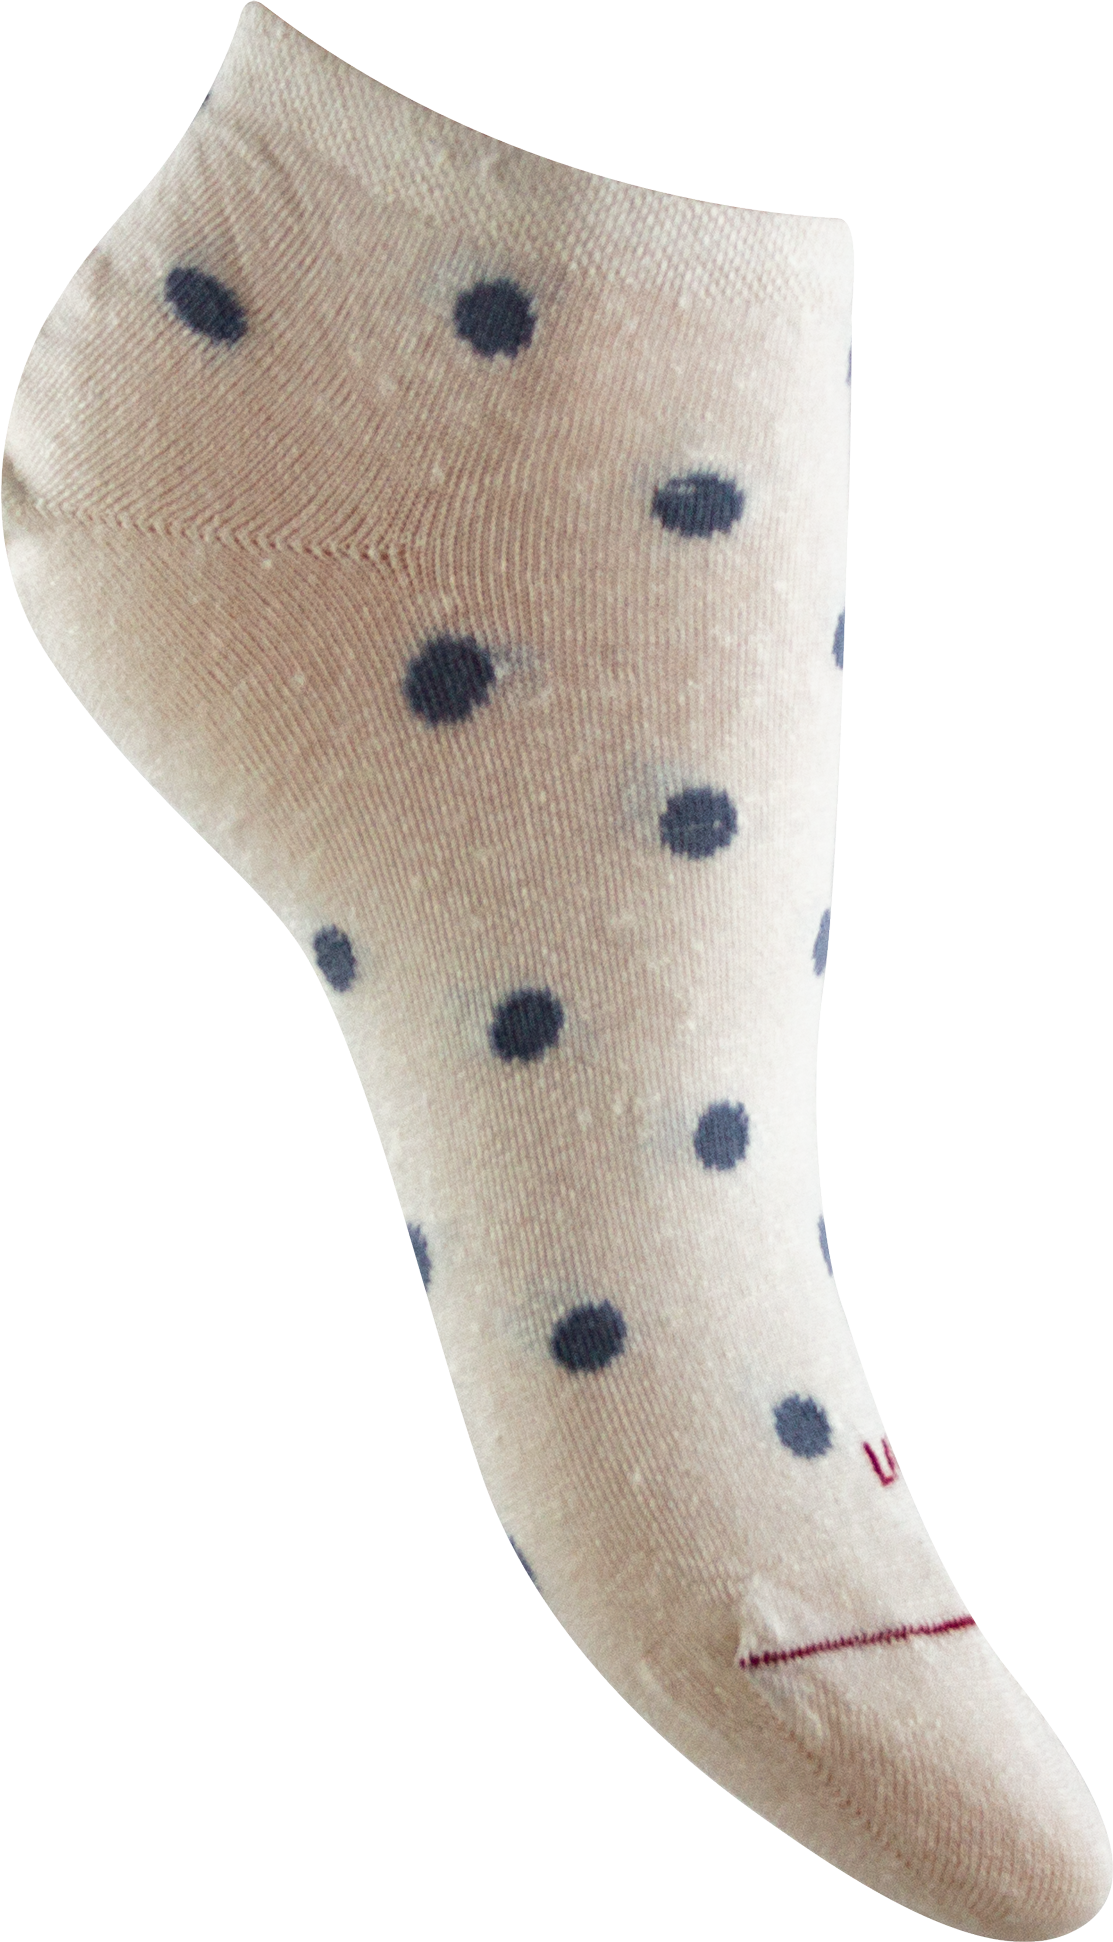 Women's low socks with polka dots in linen